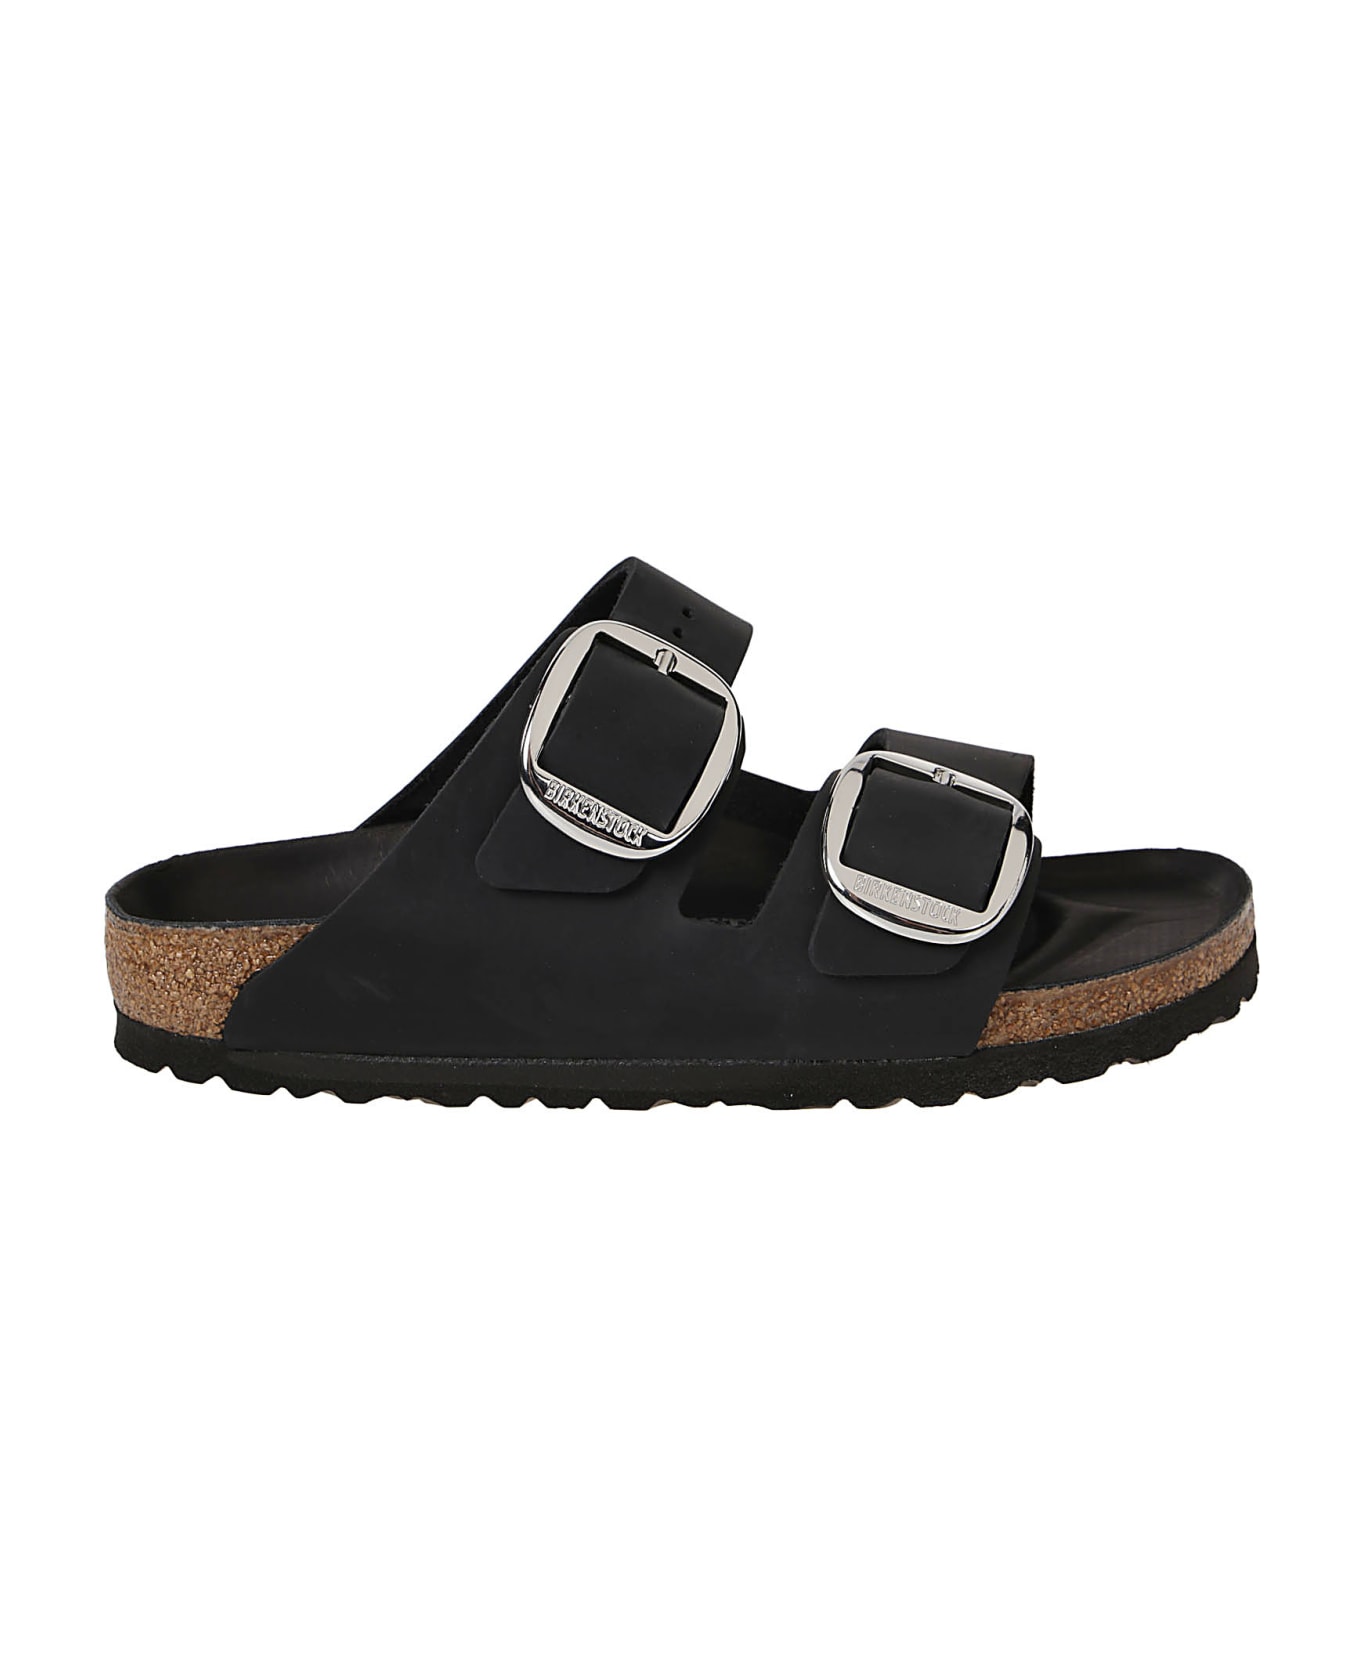 Birkenstock Arizona Big Buckle Sandals - Black